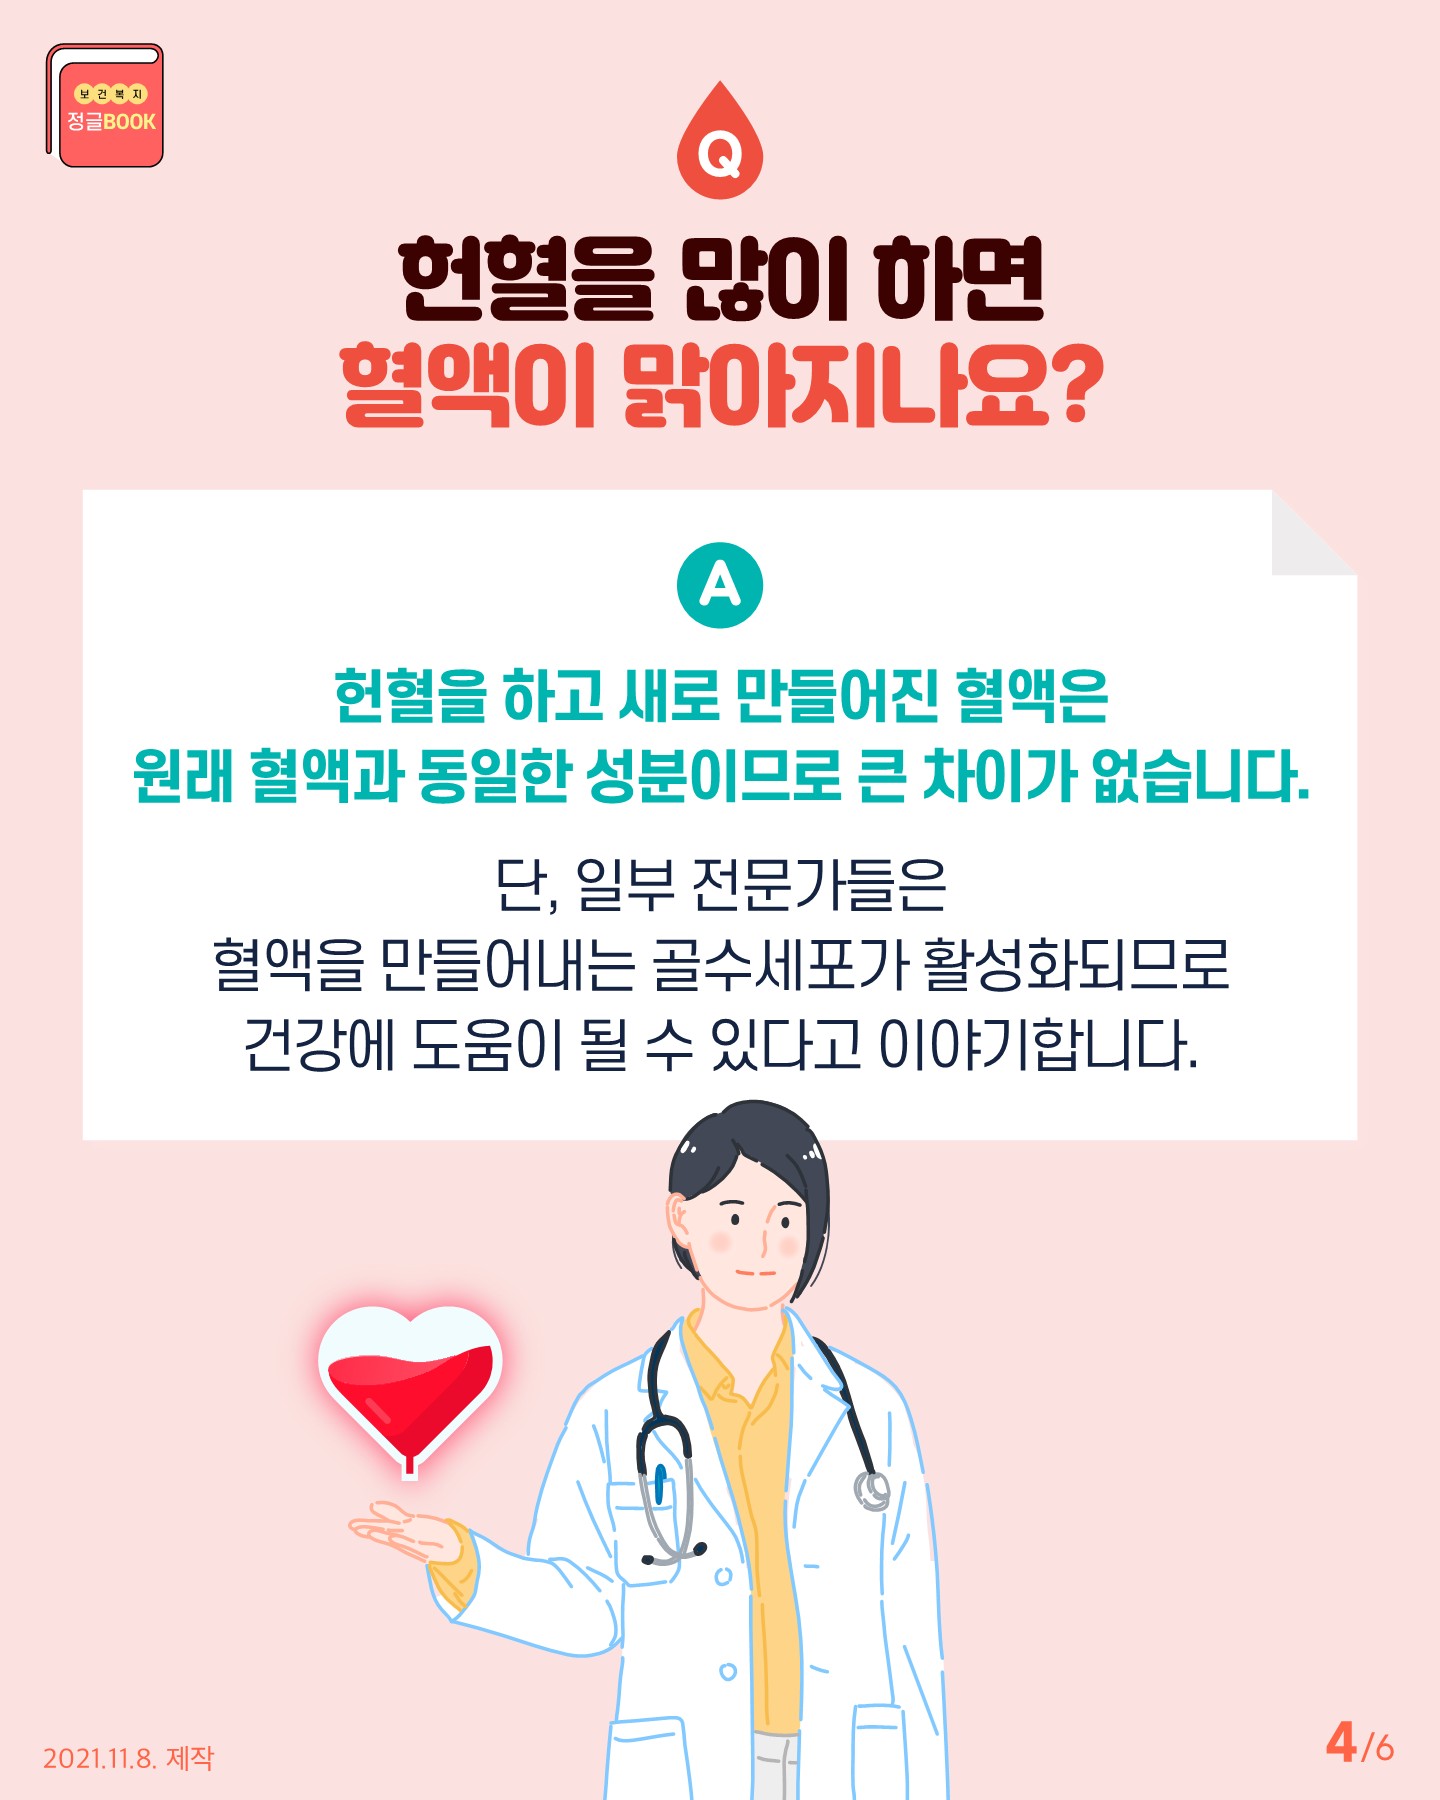 전라북도교육청 인성건강과_Q_A로 알아보는 헌혈 궁금증(카드뉴스)_4